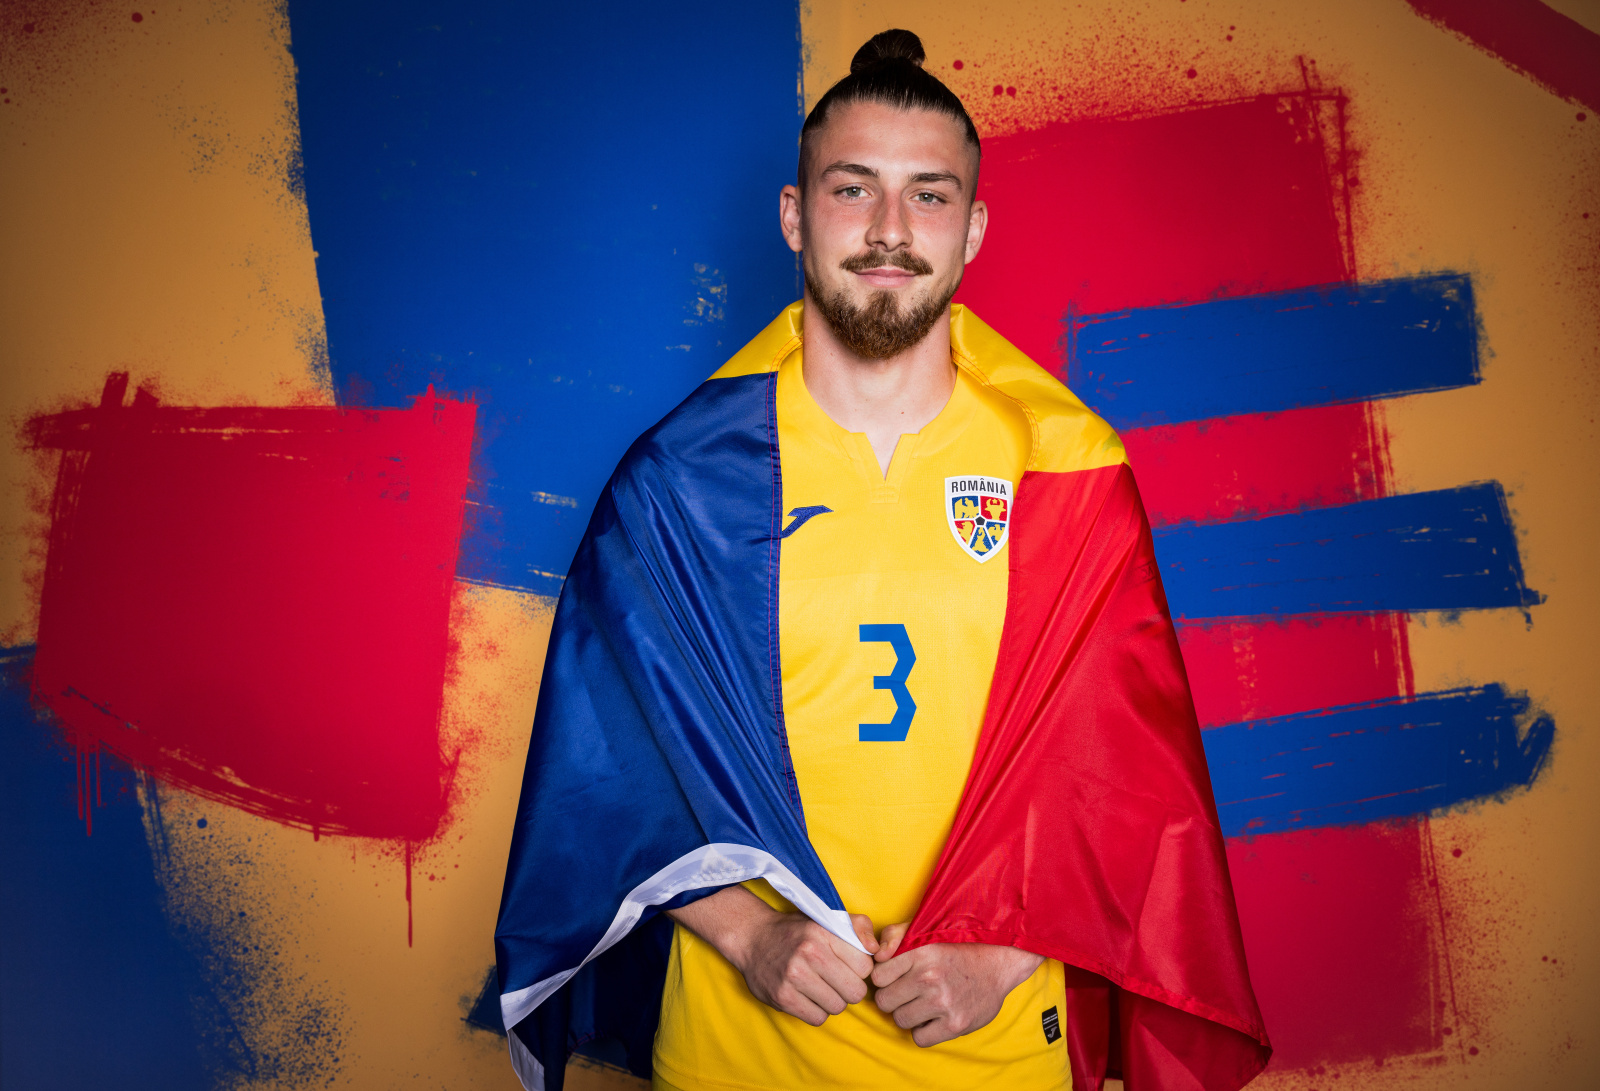 Mesajul postat de naționala României în ziua meciului decisiv cu Slovacia! Dată specială pentru români